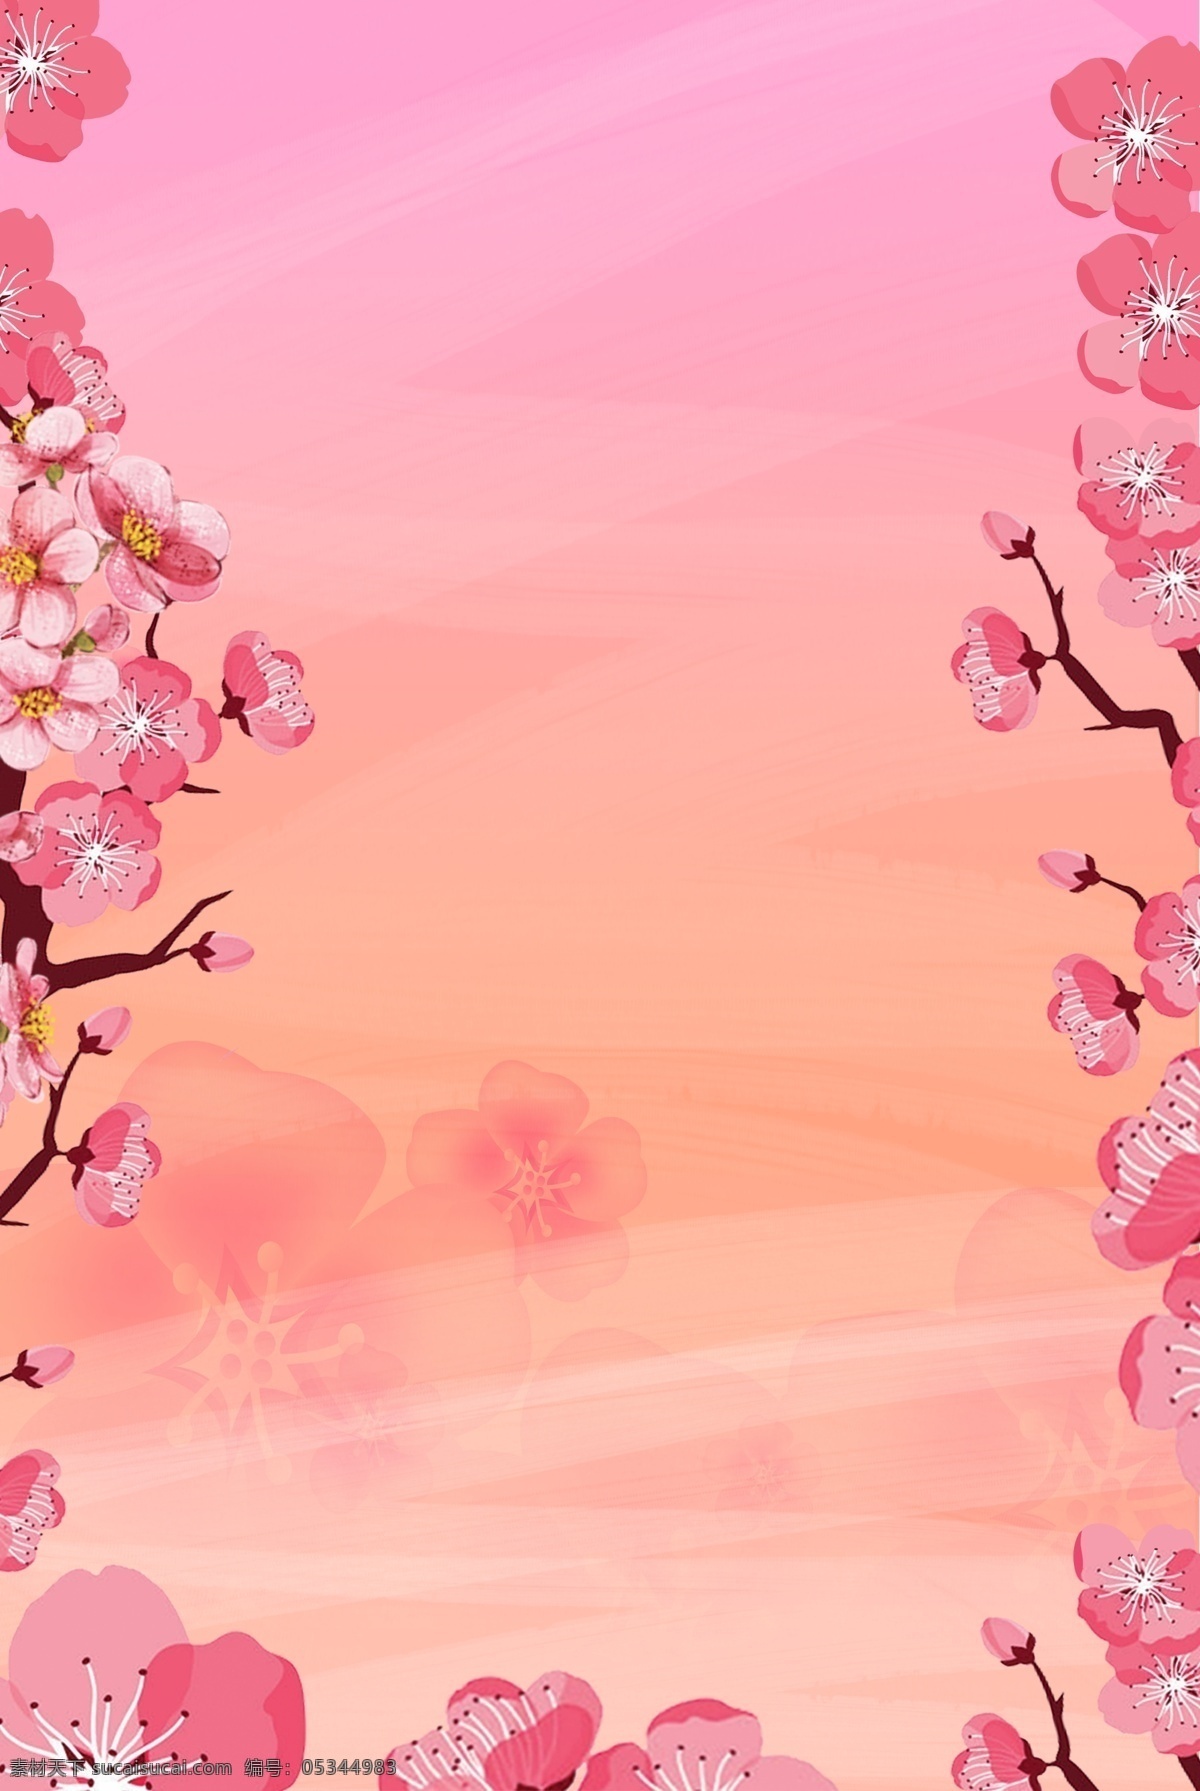 唯美 桃花 环绕 背景 桃花节 春天 春季 清新 春季上新 桃花树 十里桃花 花瓣